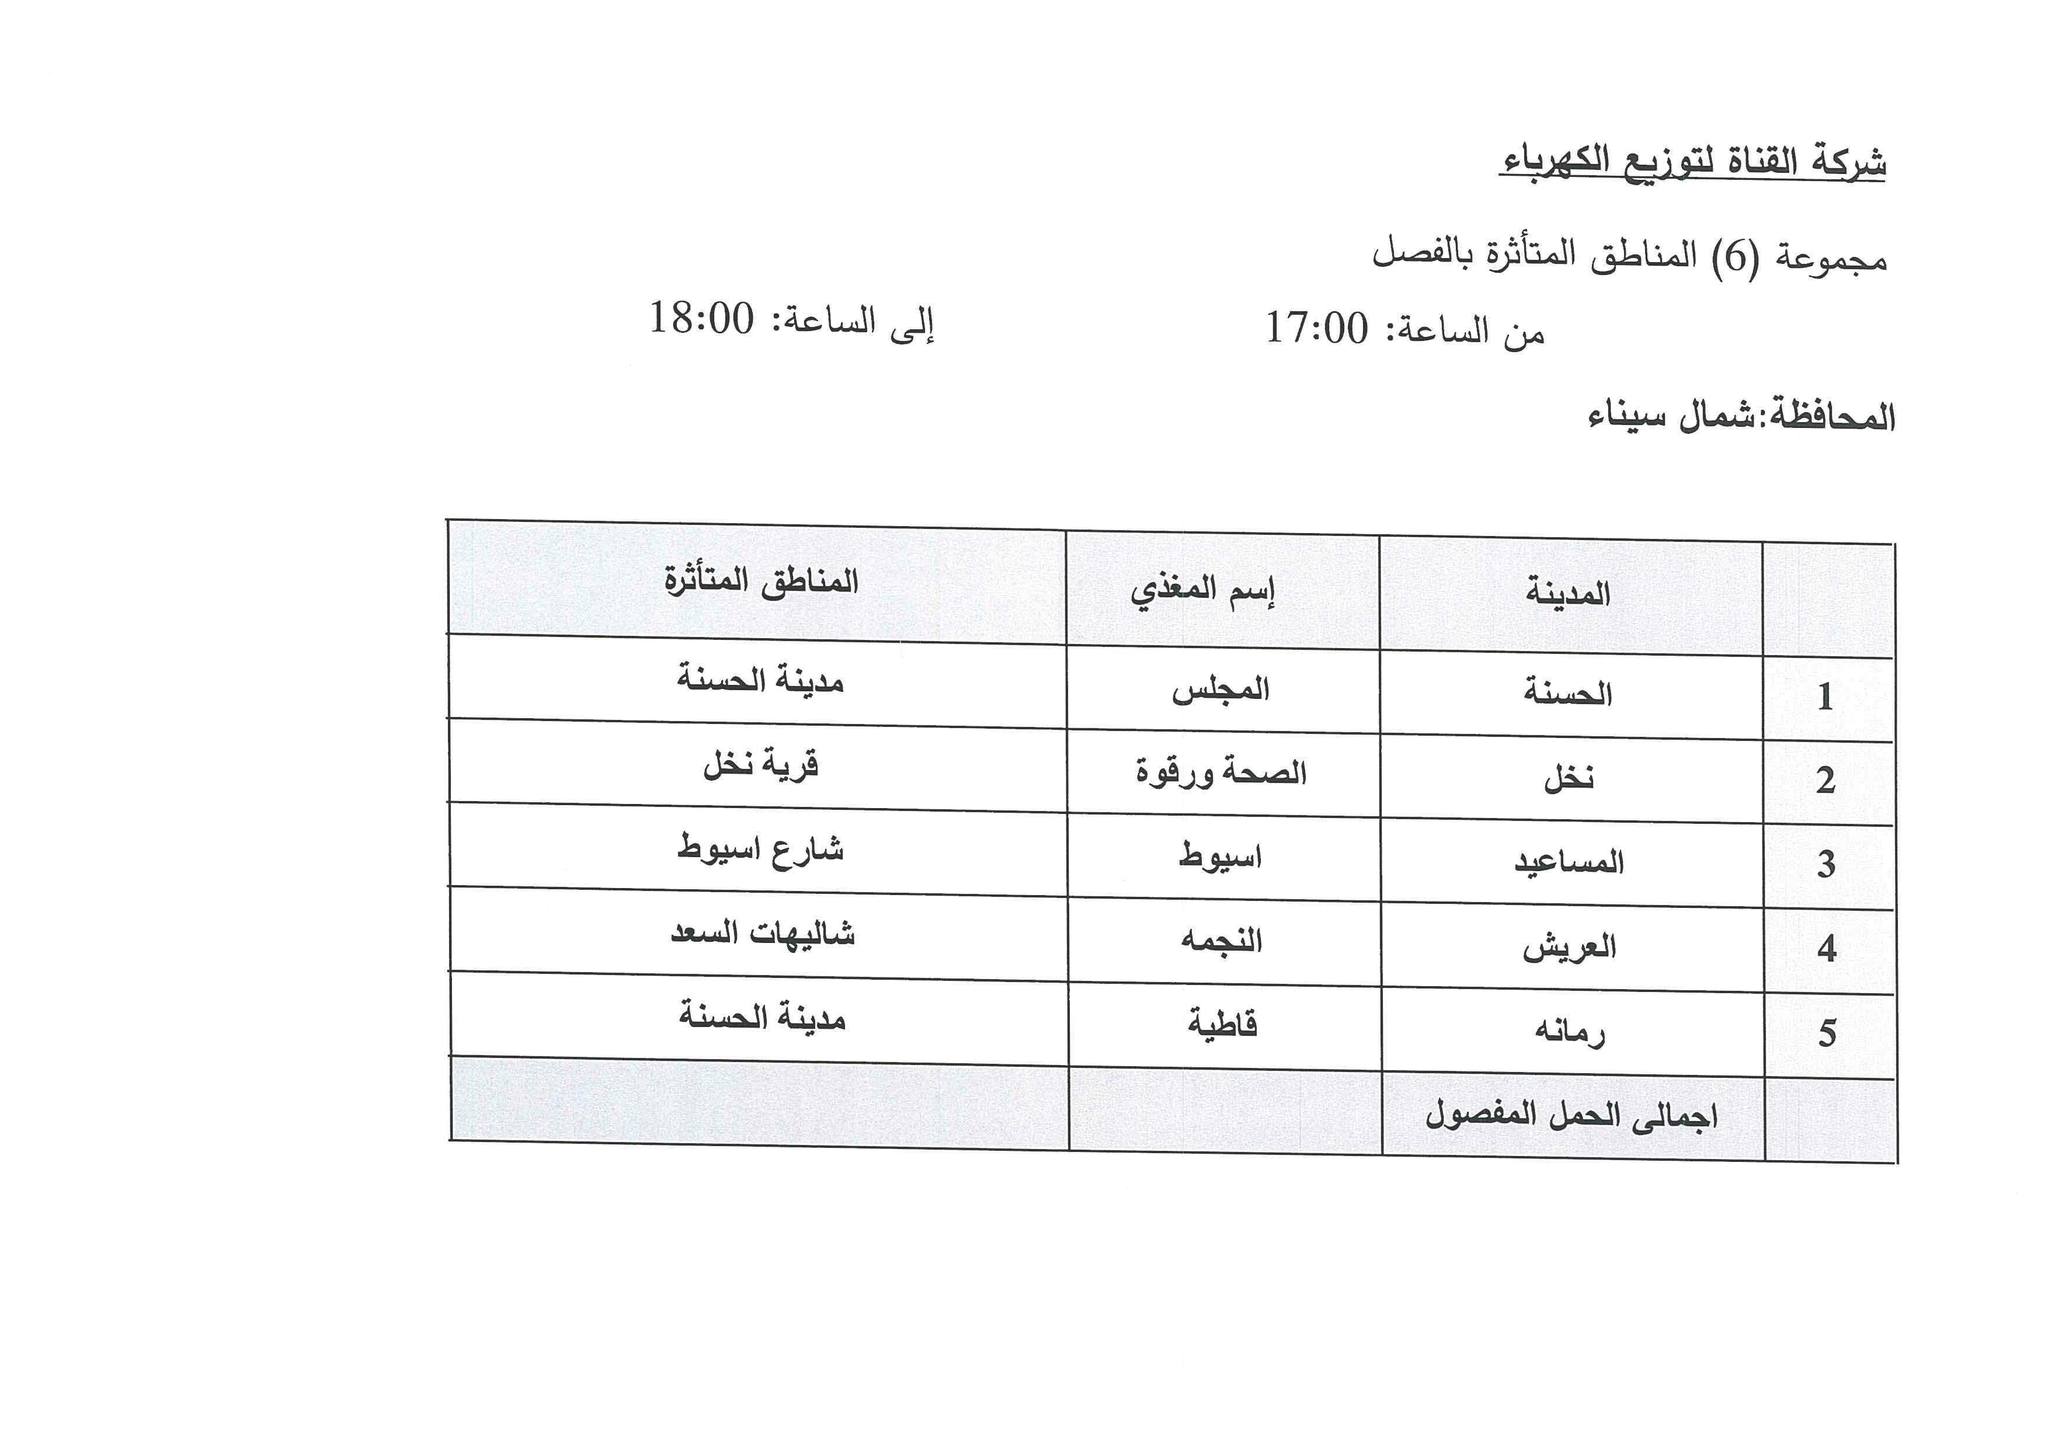 جدول مواعيد تخفيف الأحمال الكهربائية فى محافظة شمال سيناء (3)